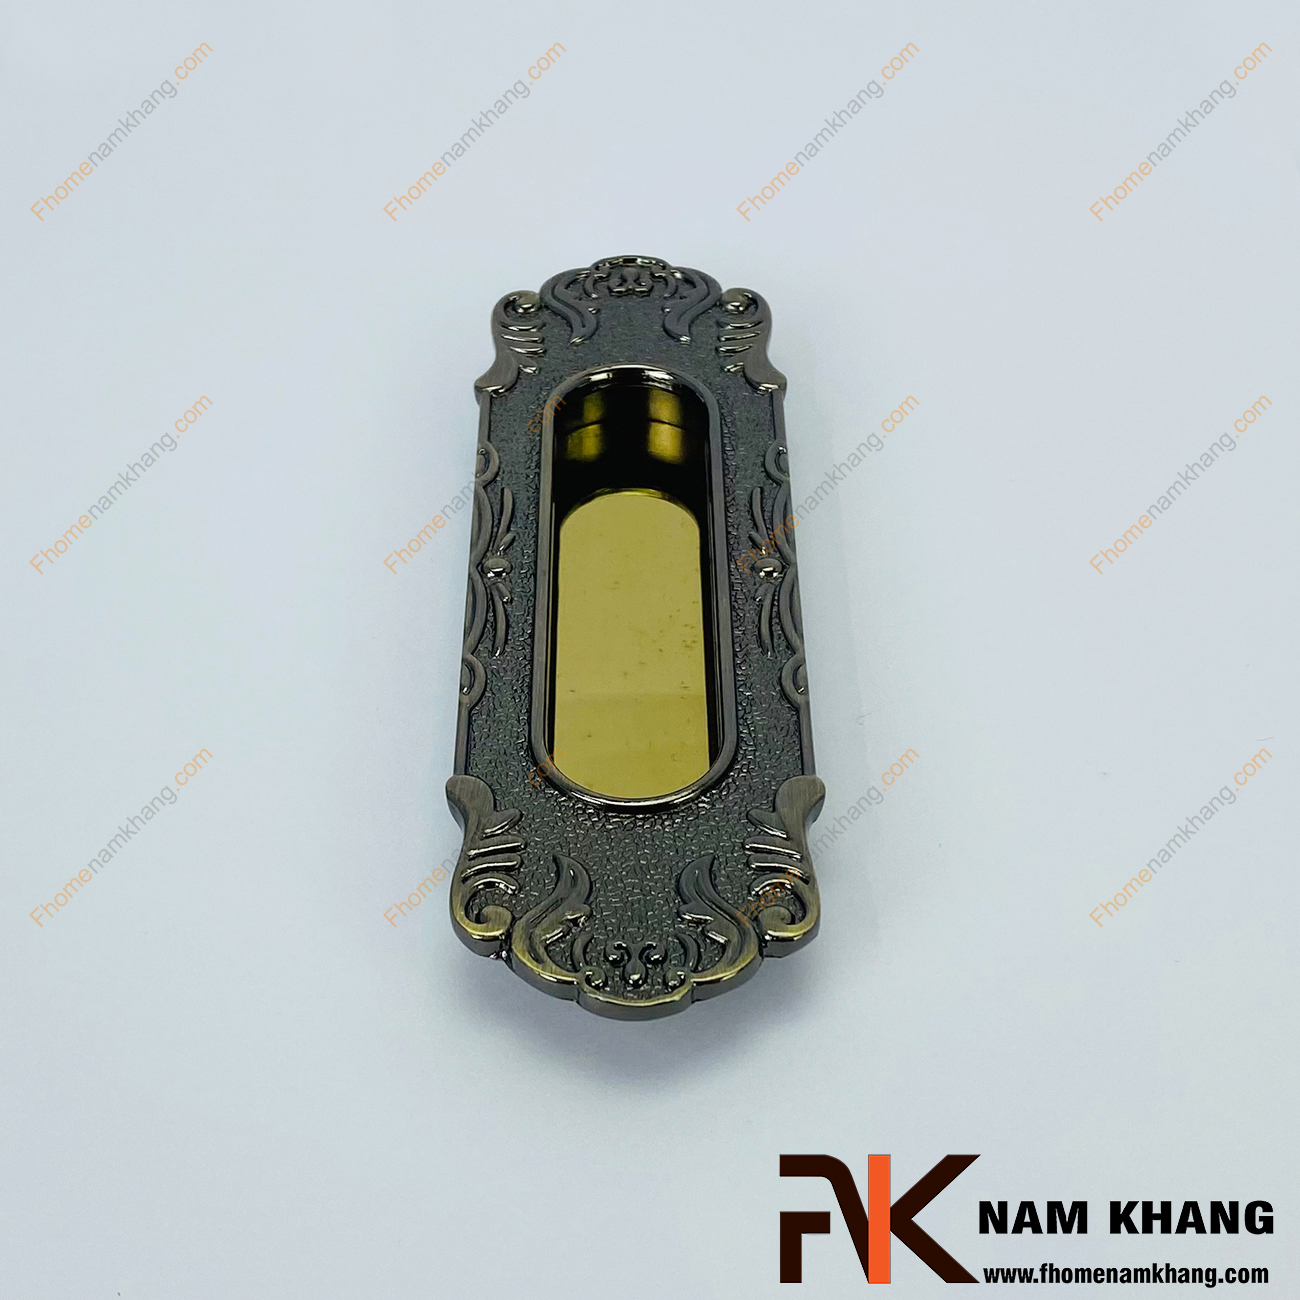 Tay nắm âm tủ kiểu cổ màu rêu vàng NK104-RV là một mẫu sản phẩm nằm trong bộ sưu tập các thiết kế mang phong cách cổ lấy cảm hứng từ thời phong kiến đời trước